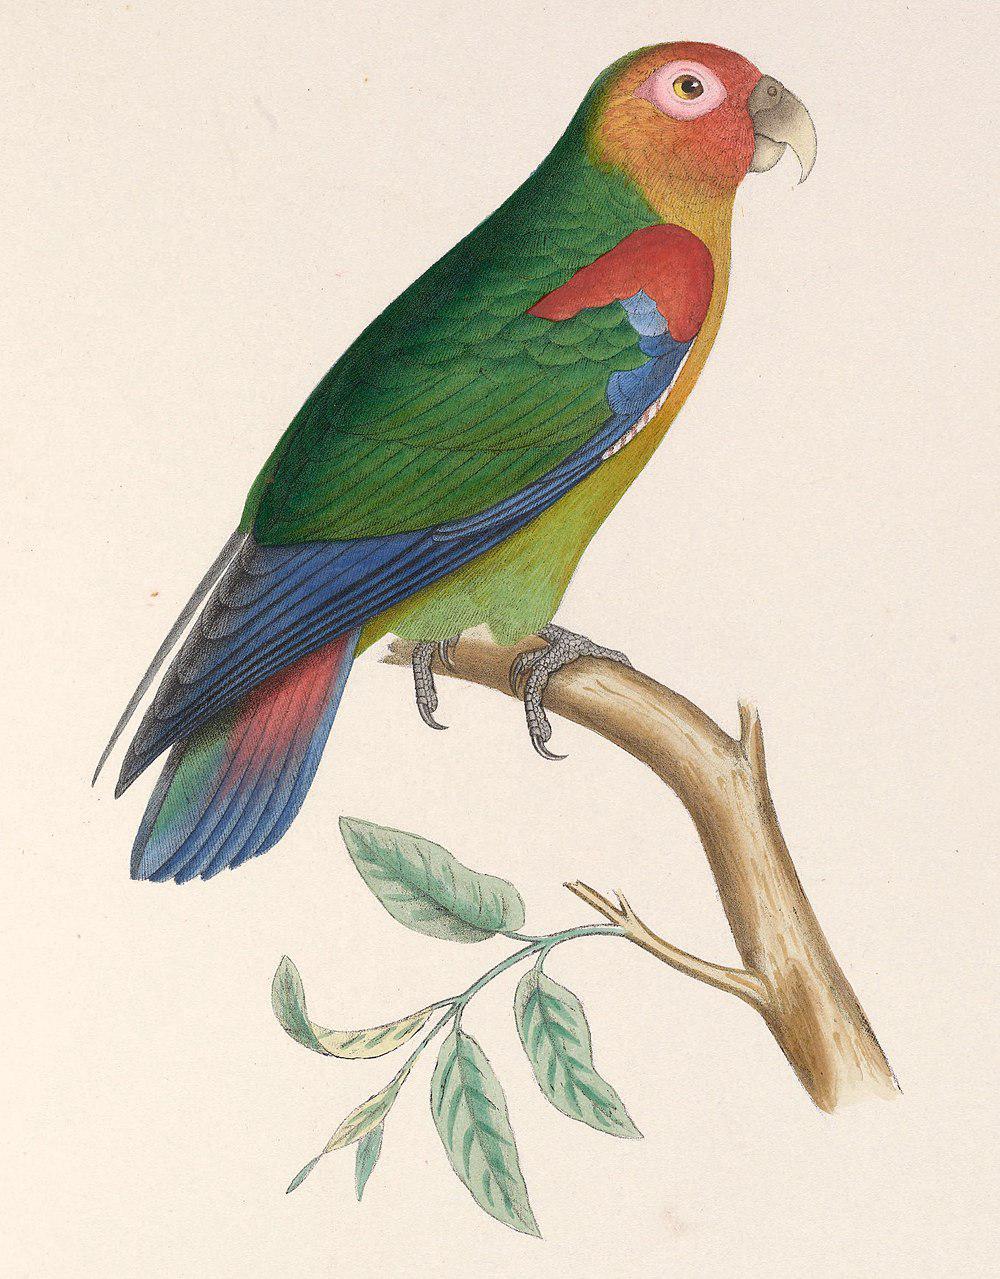 锈脸鹦哥 / Rusty-faced Parrot / Hapalopsittaca amazonina